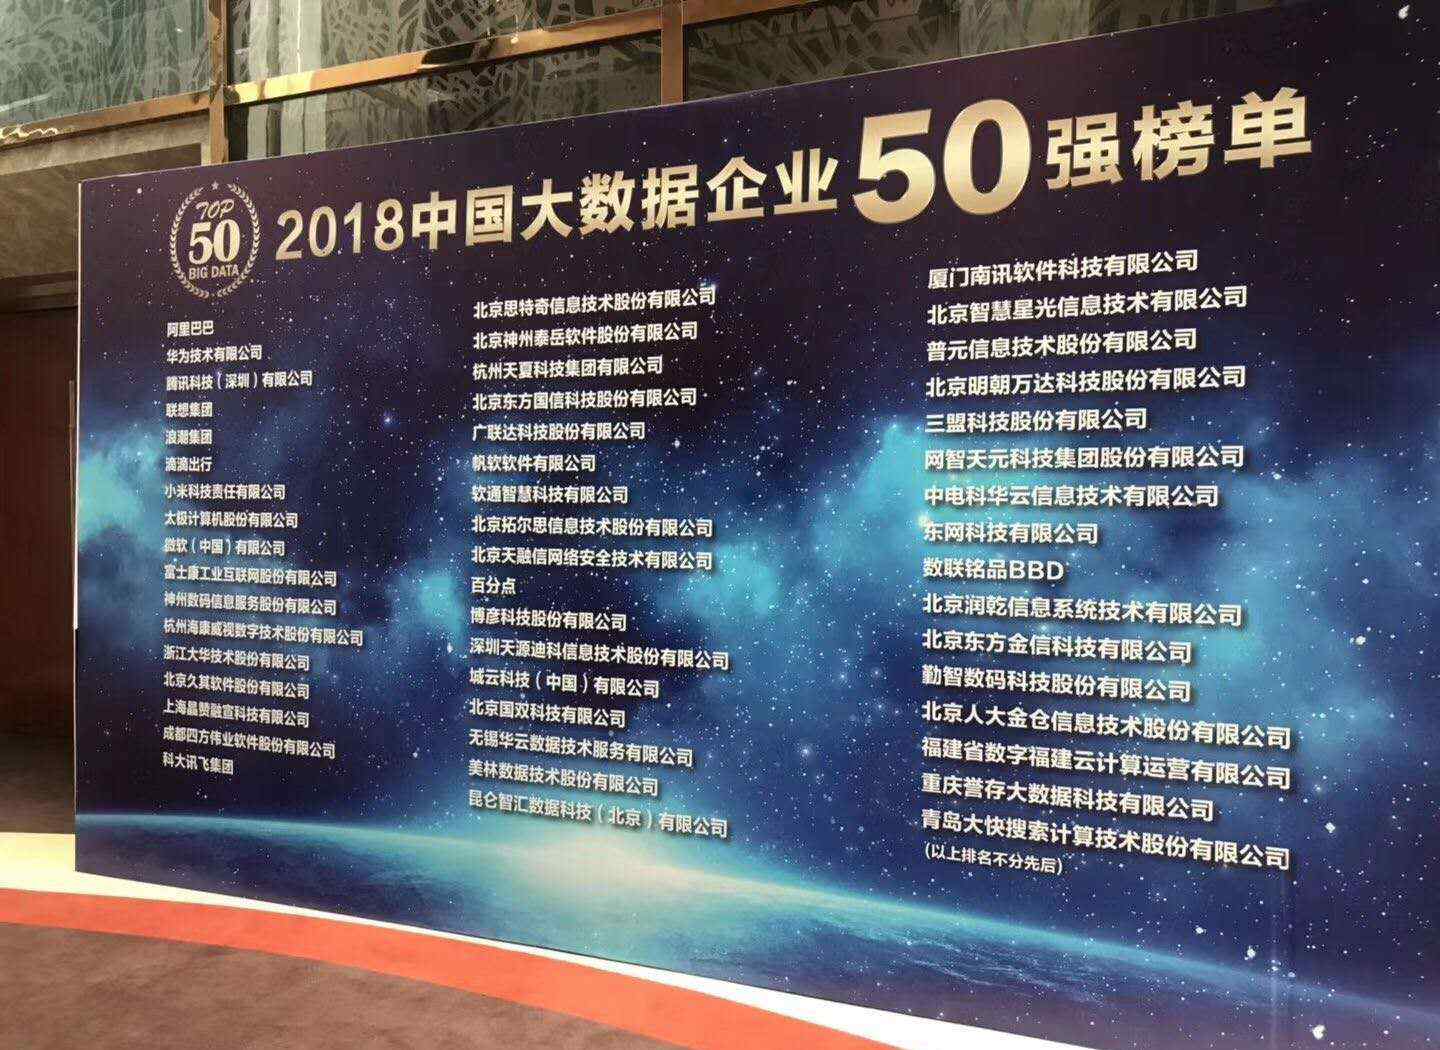 国内大数据公司 2018中国大数据企业50强榜单出炉